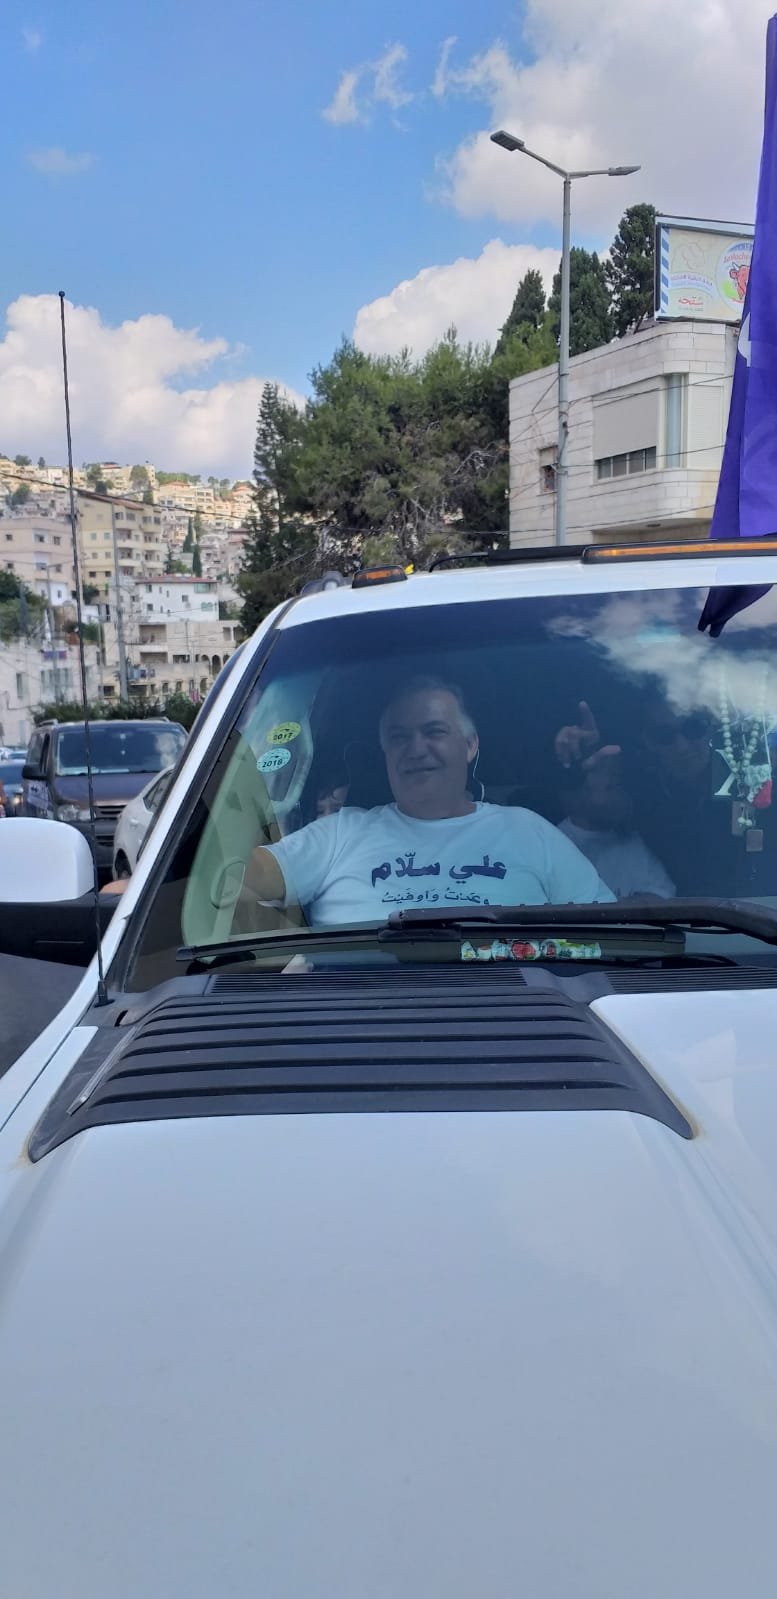 سلام  وداعموه يوزعون المنشور الأول لقائمة ناصرتي في شوارع الناصرة-0